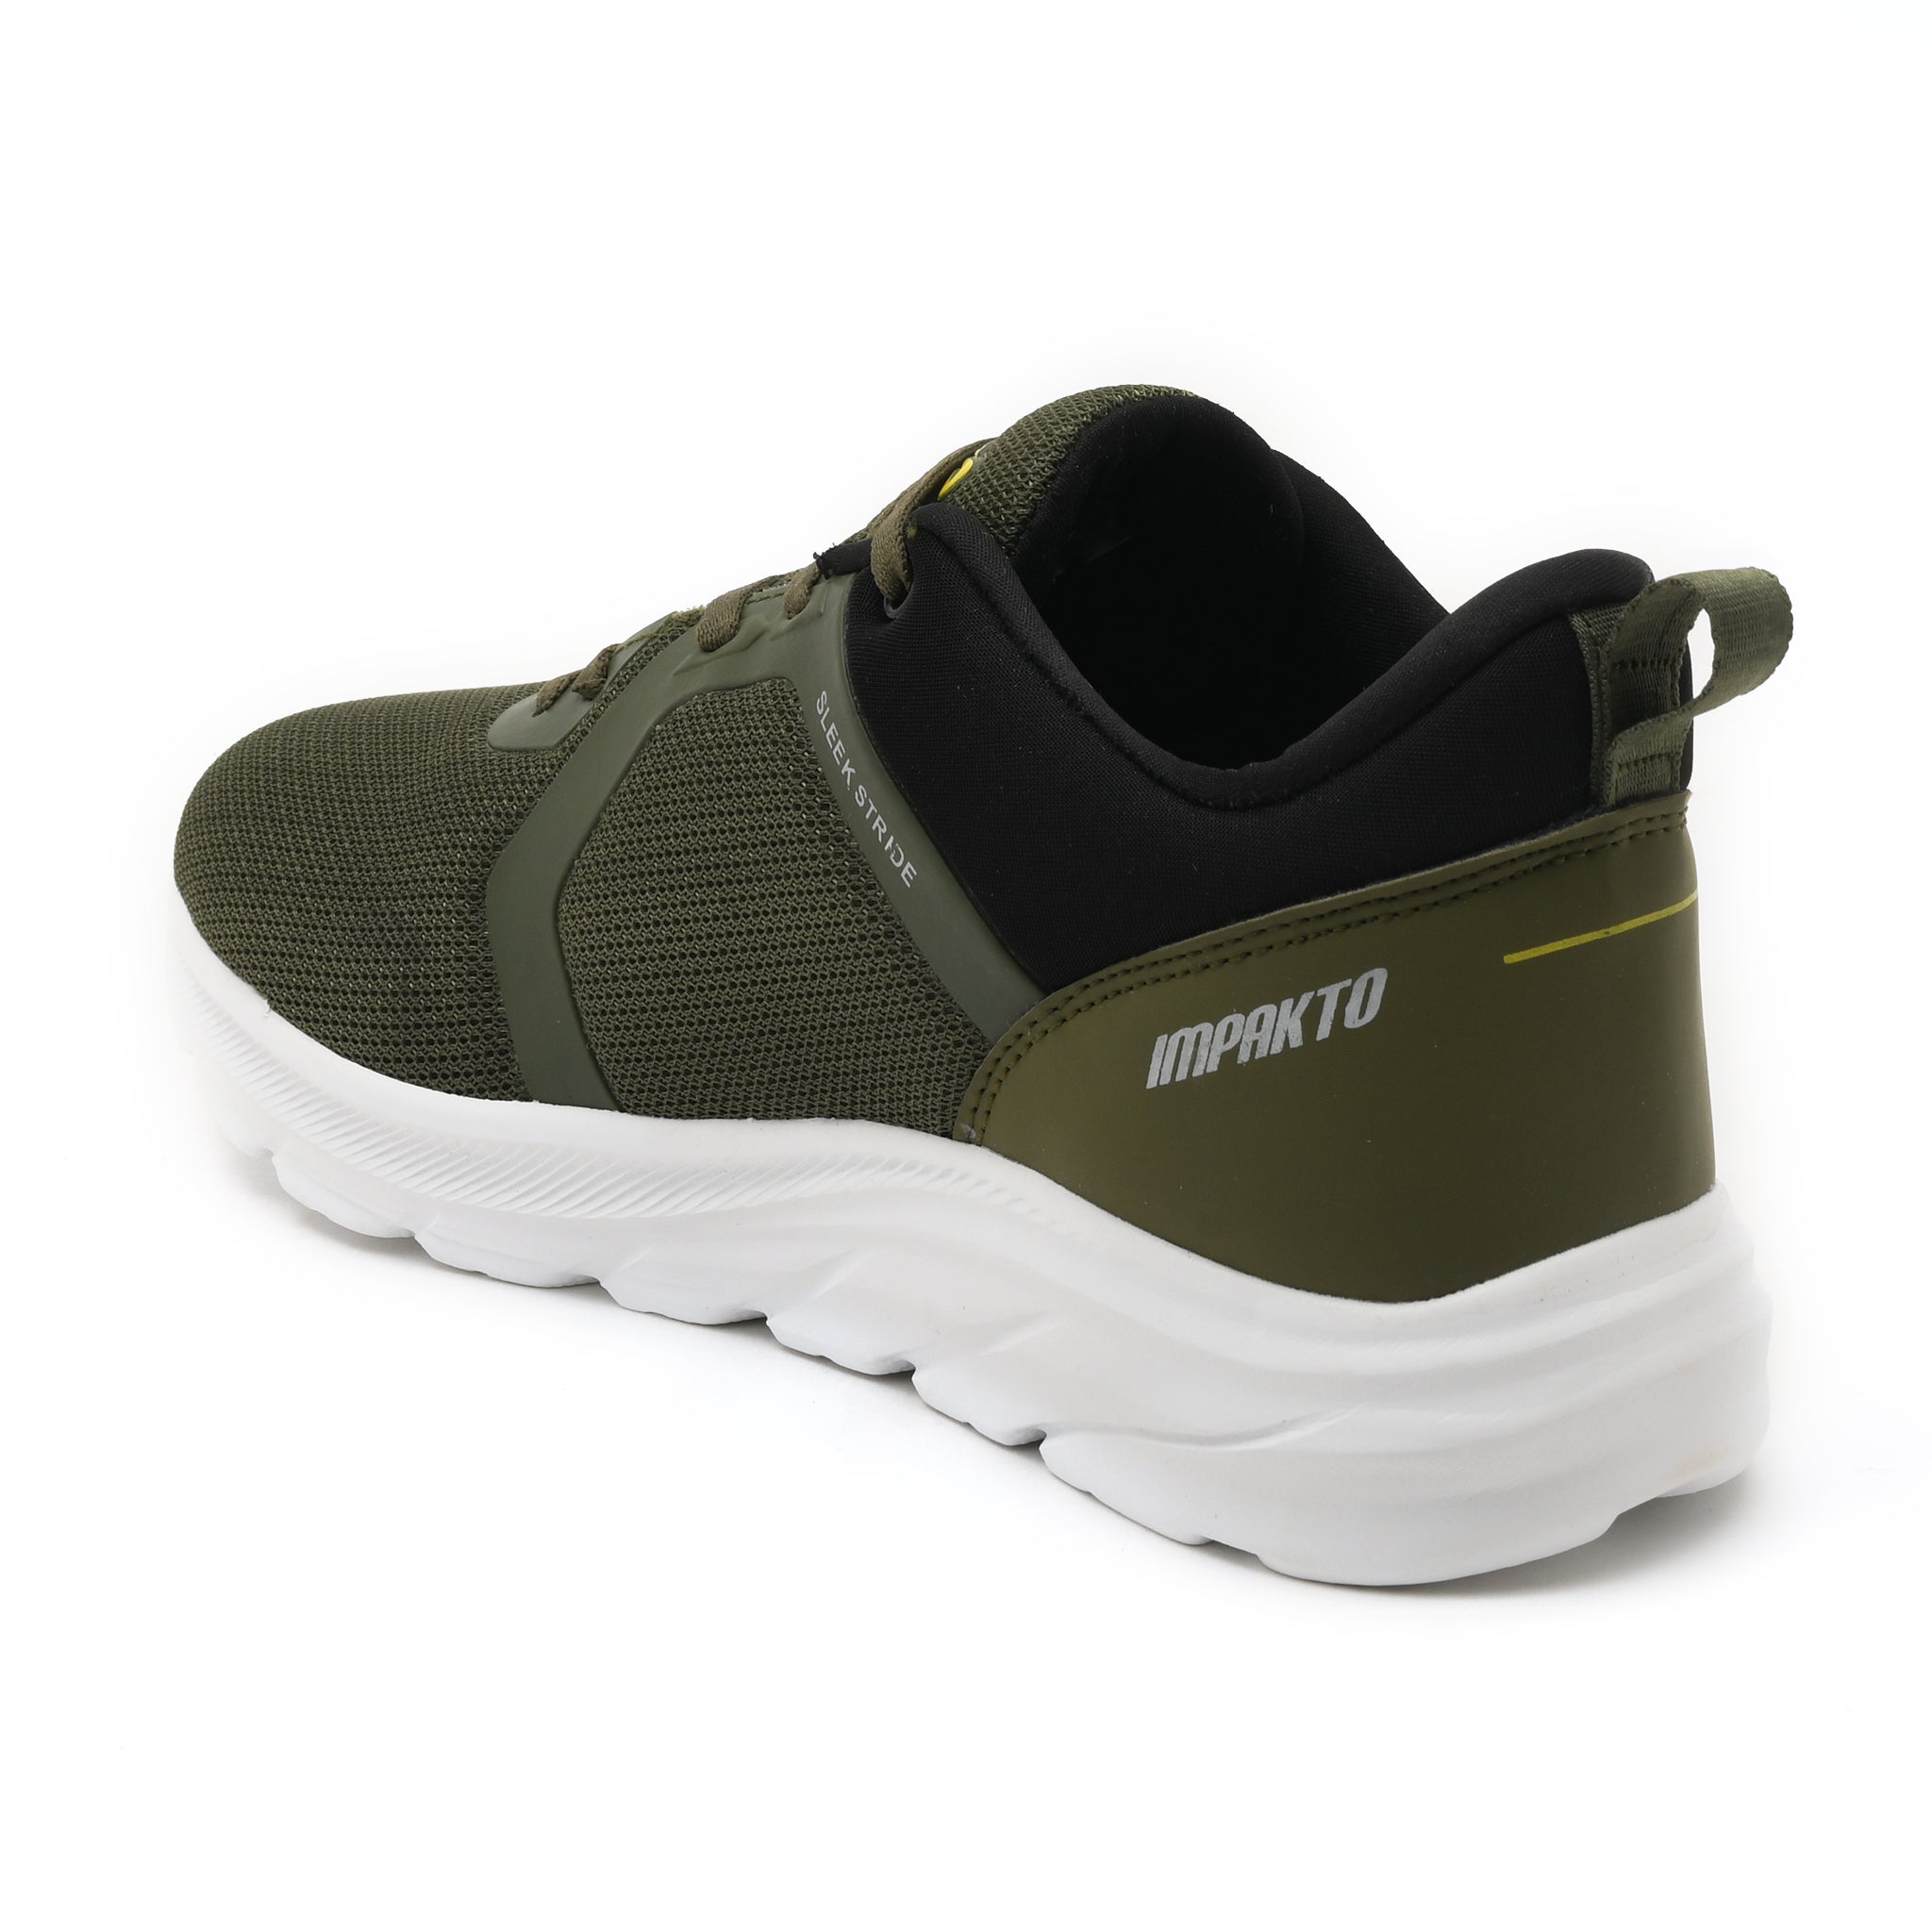 Impakto  Aqua Grip  Men's  Olive Running Shoes